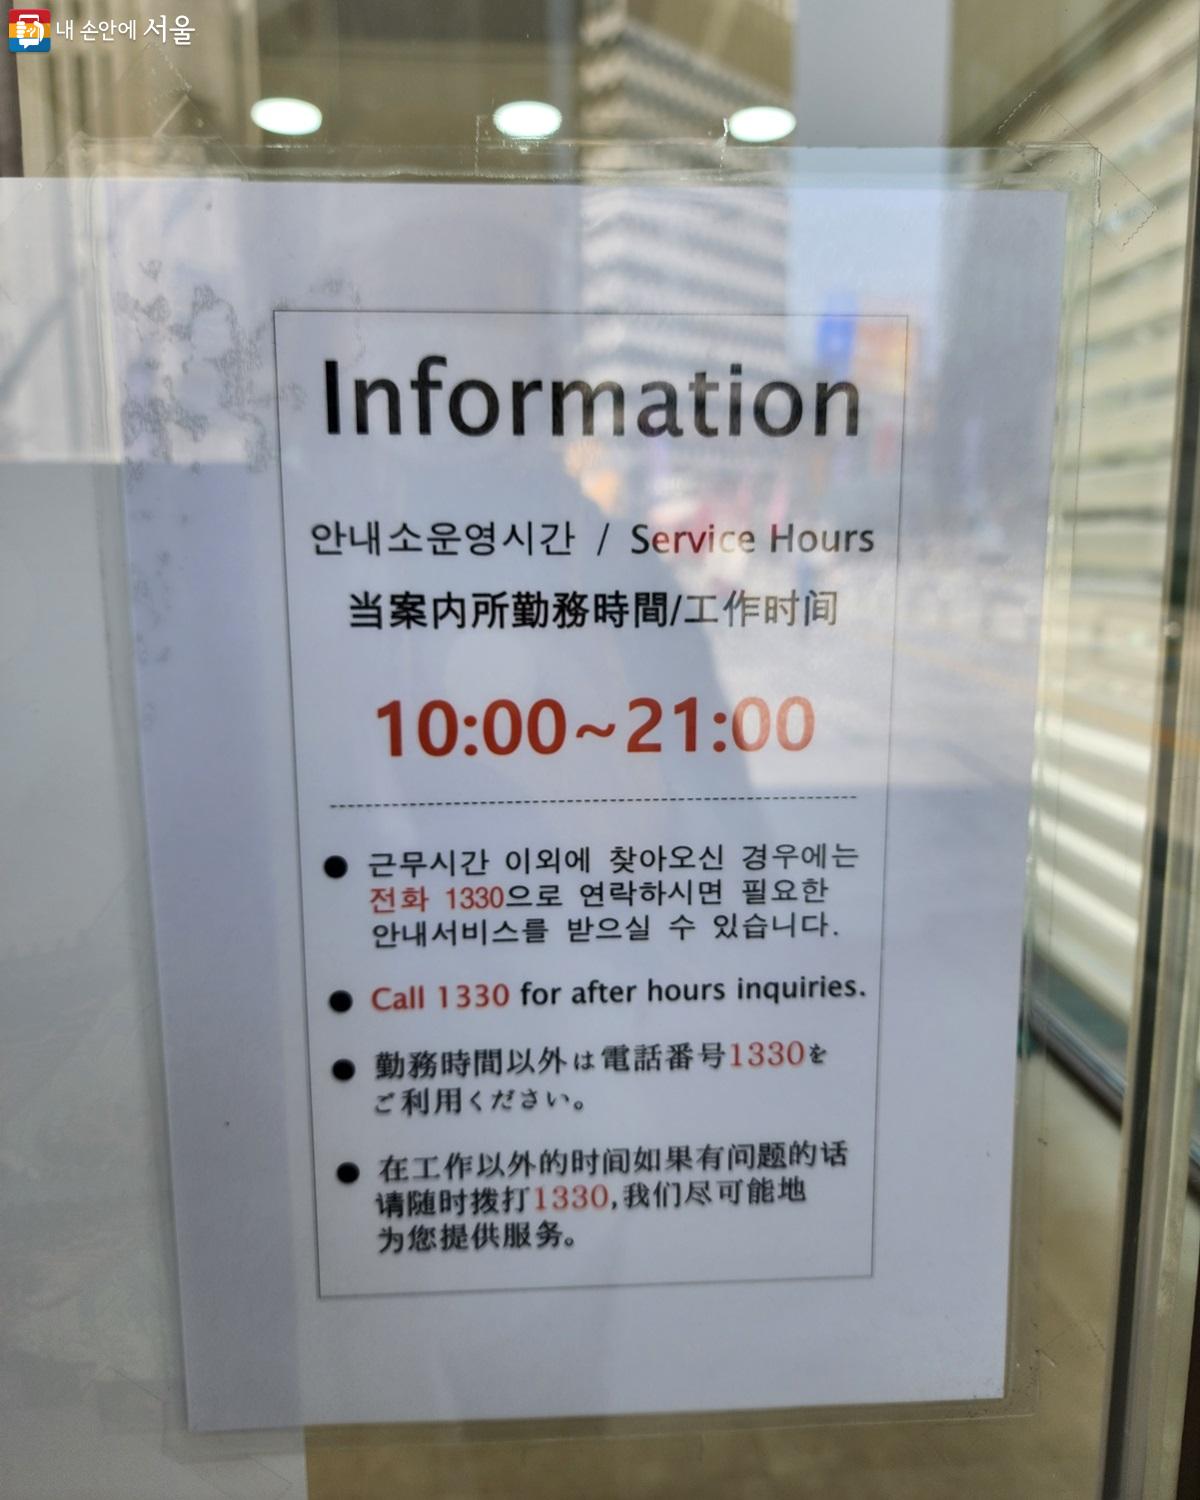 서초여행자지원센터 운영시간은 오전 10시부터 오후 9시까지이다. ©박소예